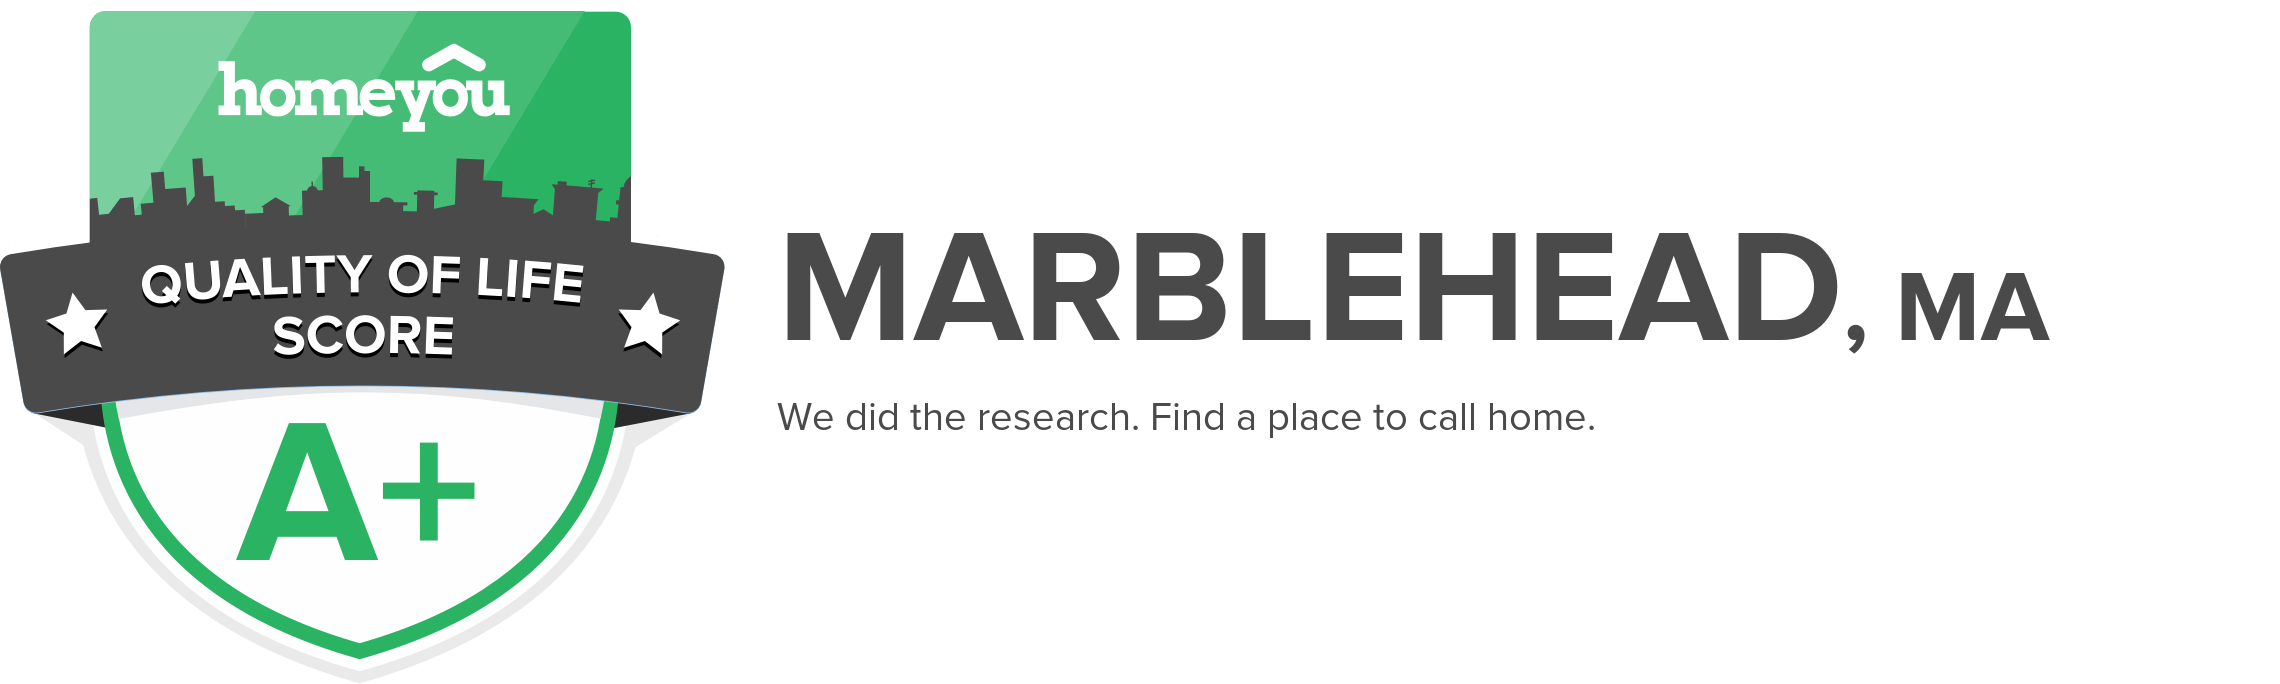 Marblehead, MA